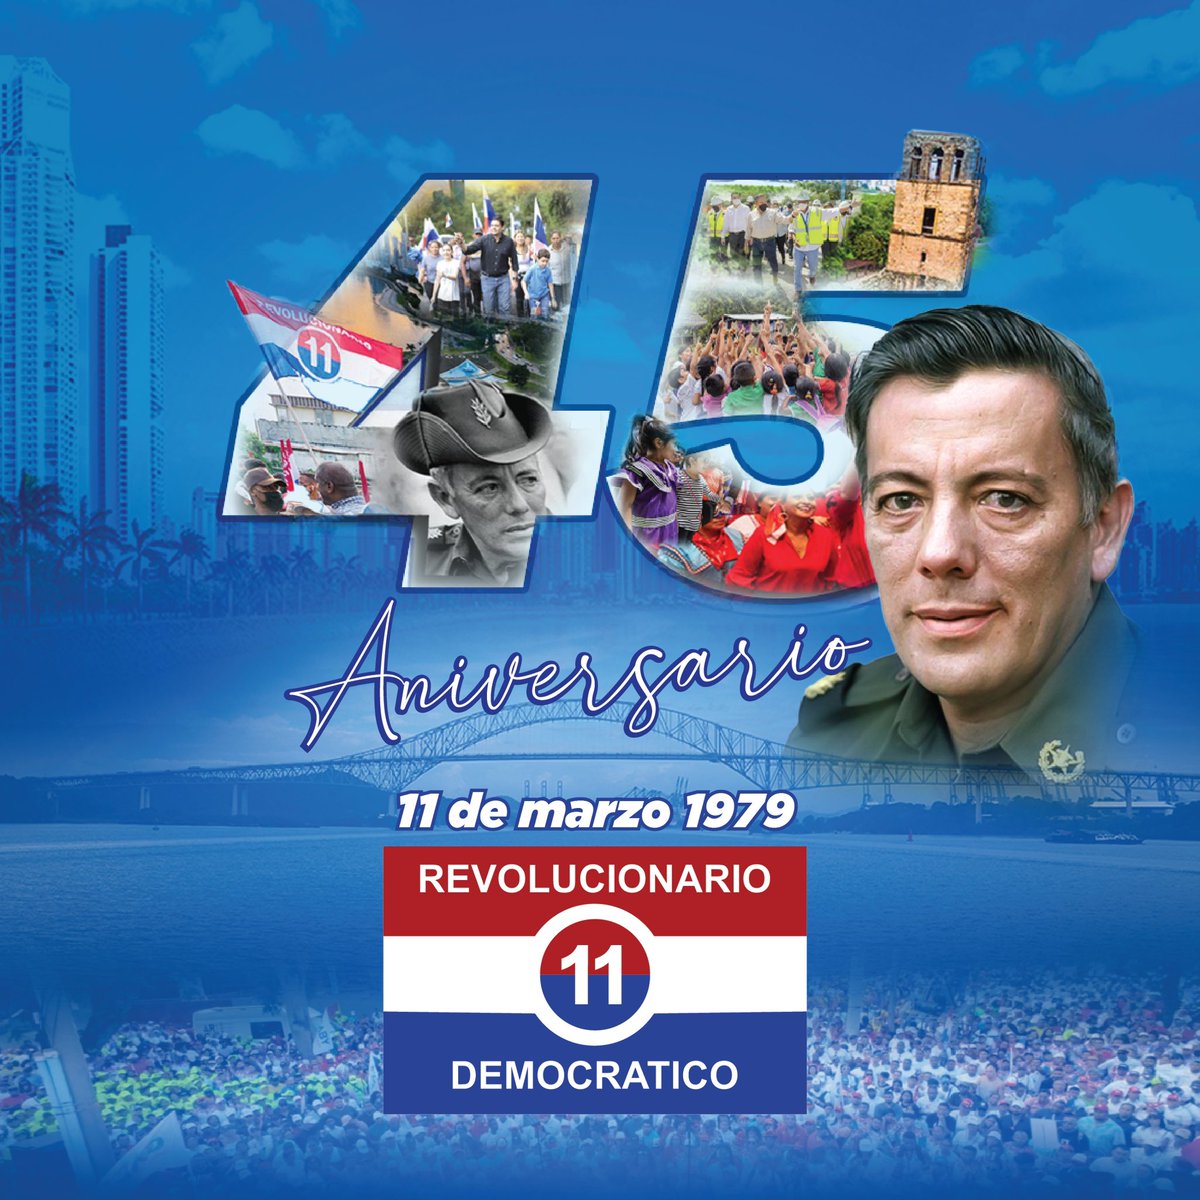 ¡Celebramos con orgullo los 45 años del Partido Revolucionario Democrático! Durante décadas, hemos defendido la soberanía de nuestro país, fortaleciendo nuestra lucha por un Panamá más justo y democrático. ¡Que viva el PRD y que viva Panamá!